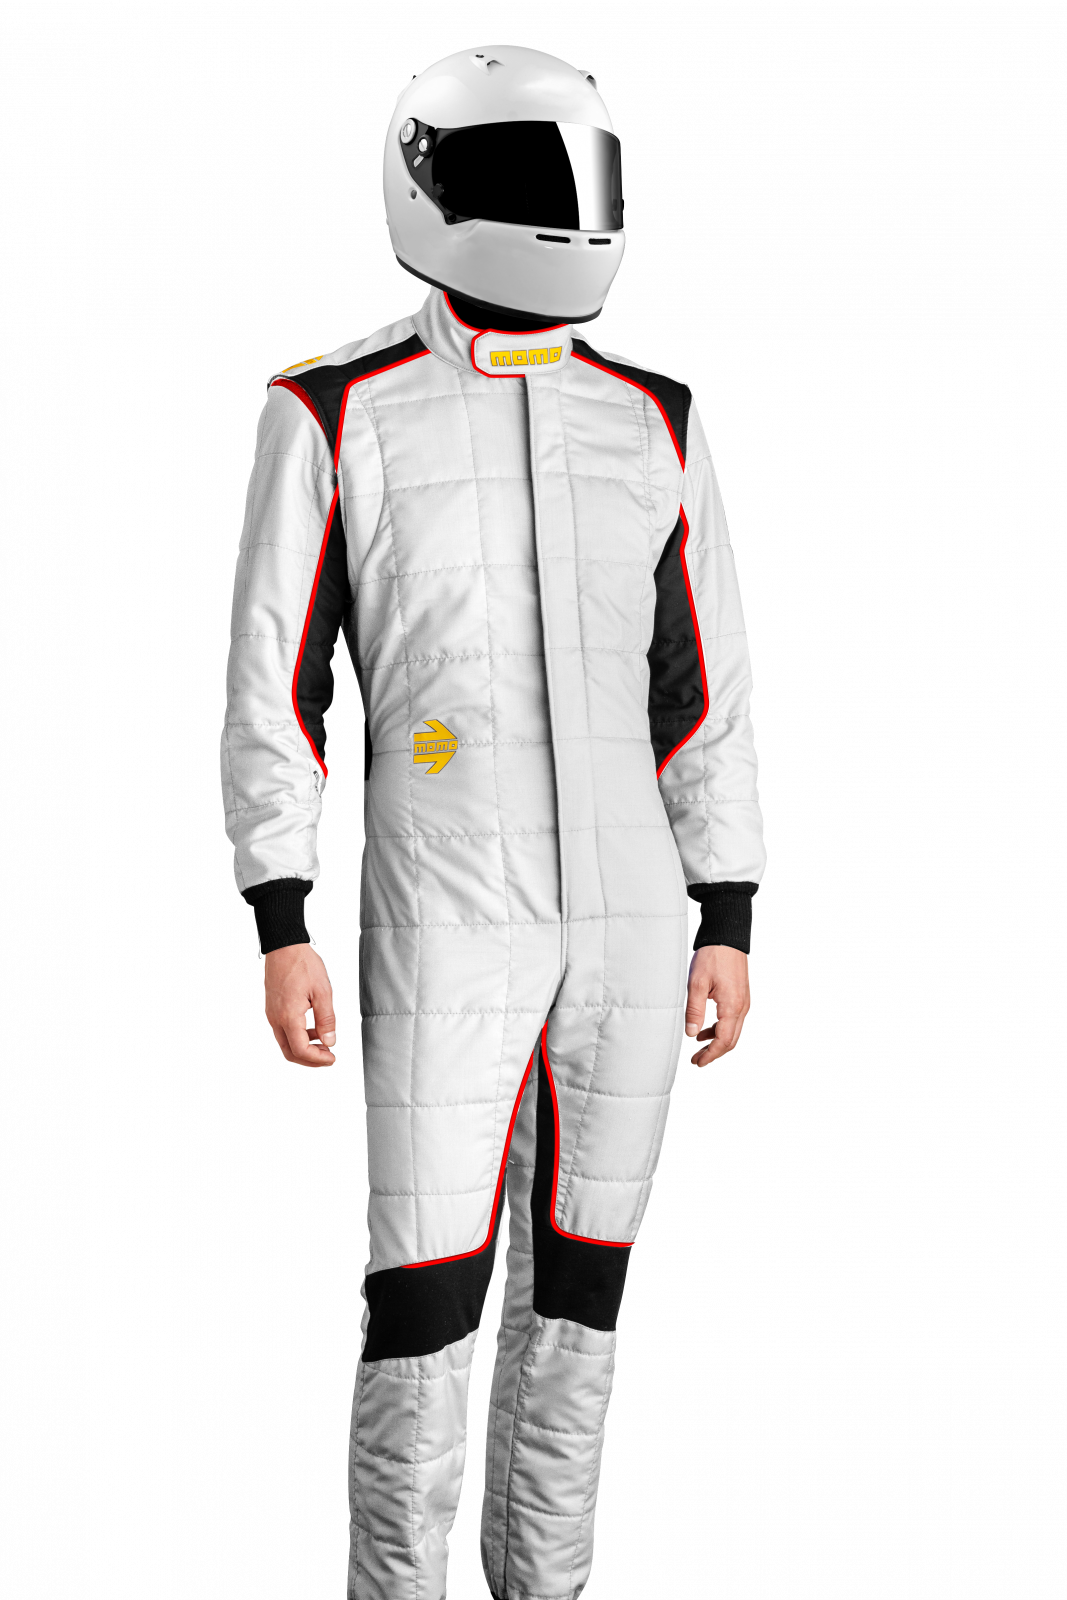 MOMO Corsa Evo White Size 58 Racing Suit TUCOEVOWHT58